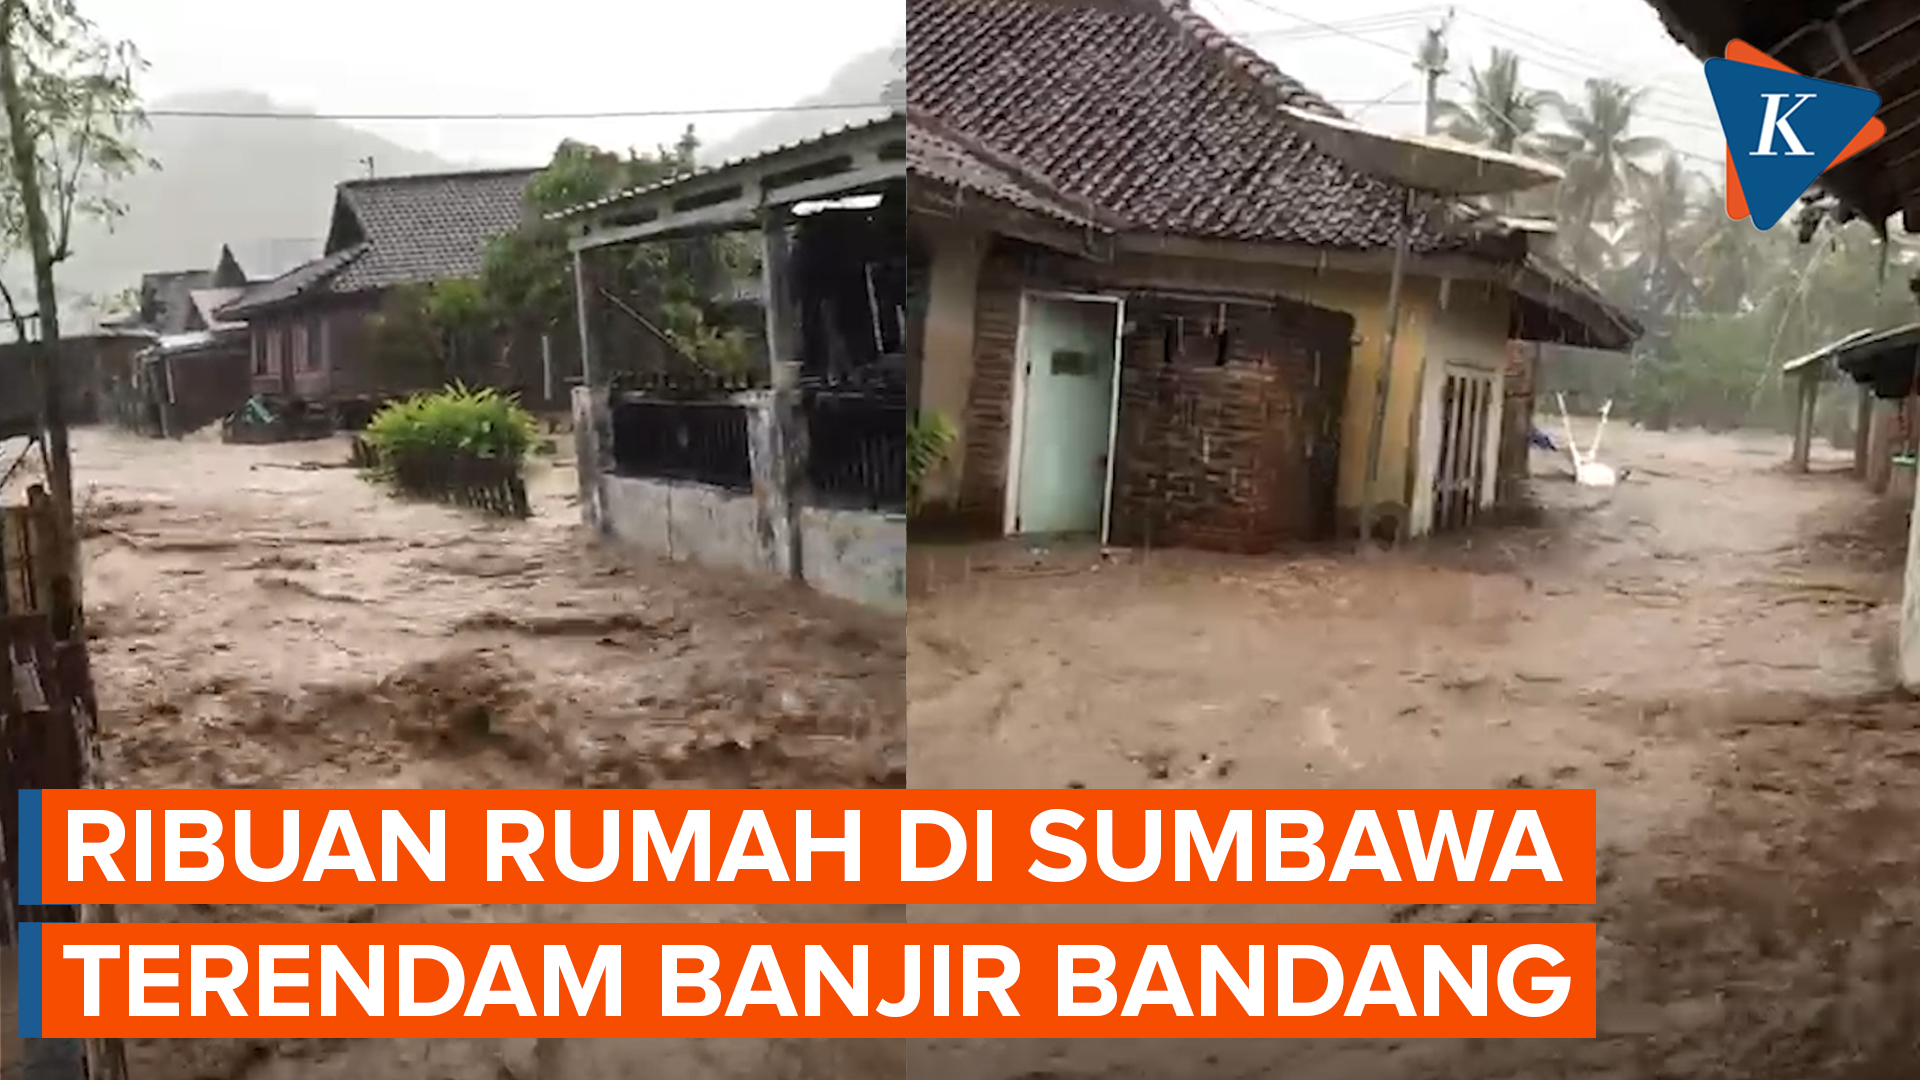 6 Kecamatan di Sumbawa Diterjang Banjir Bandang